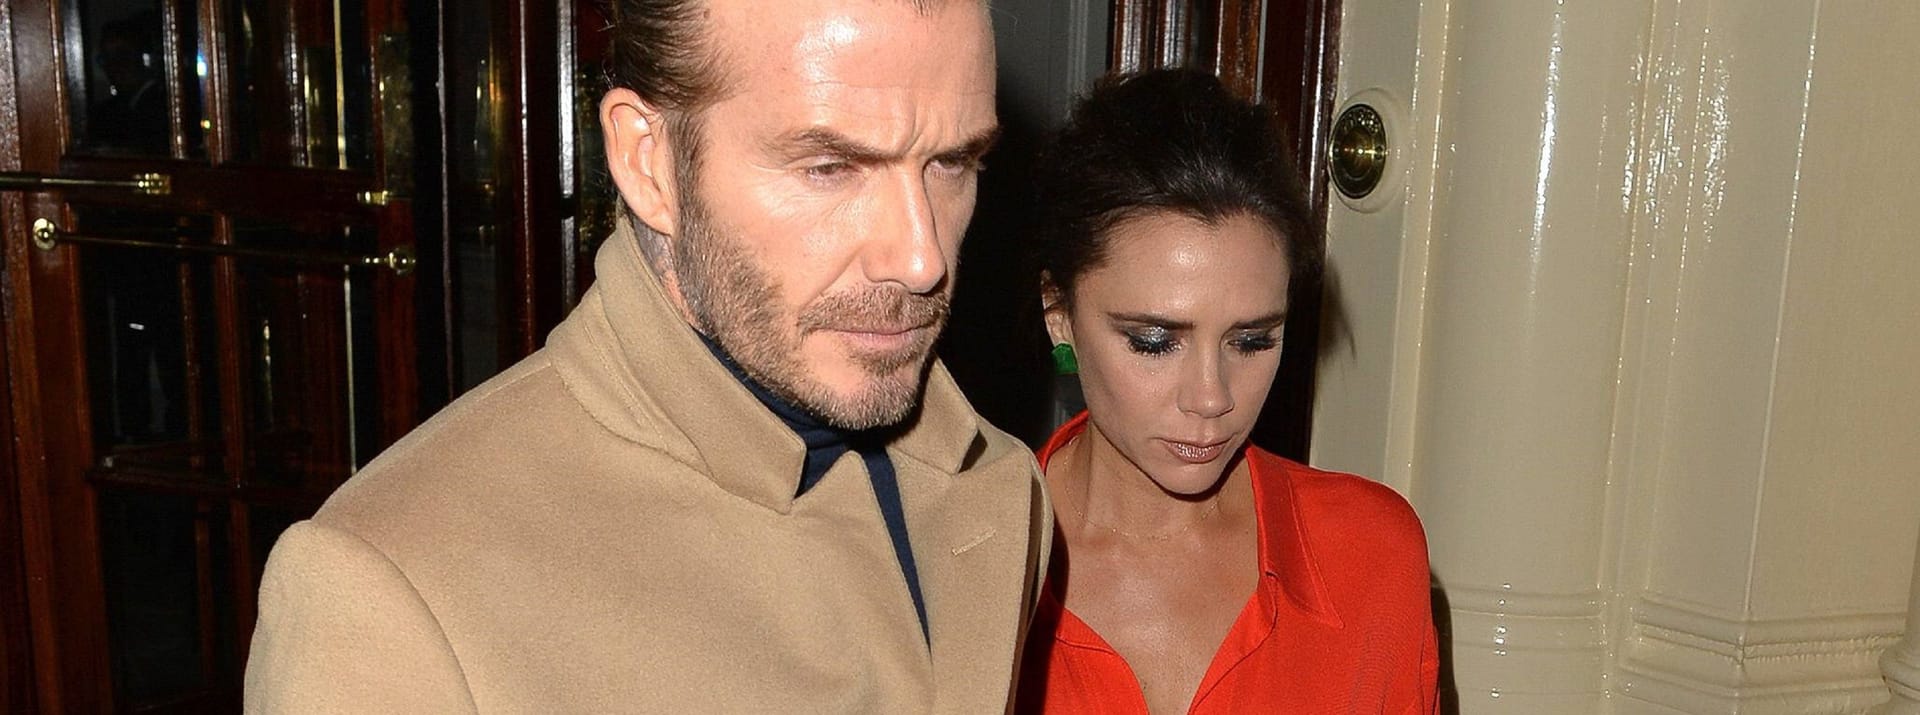 Reifere Looks: Modisch sind David Beckham und seine Ehefrau auch heute auf einer Wellenlänge.